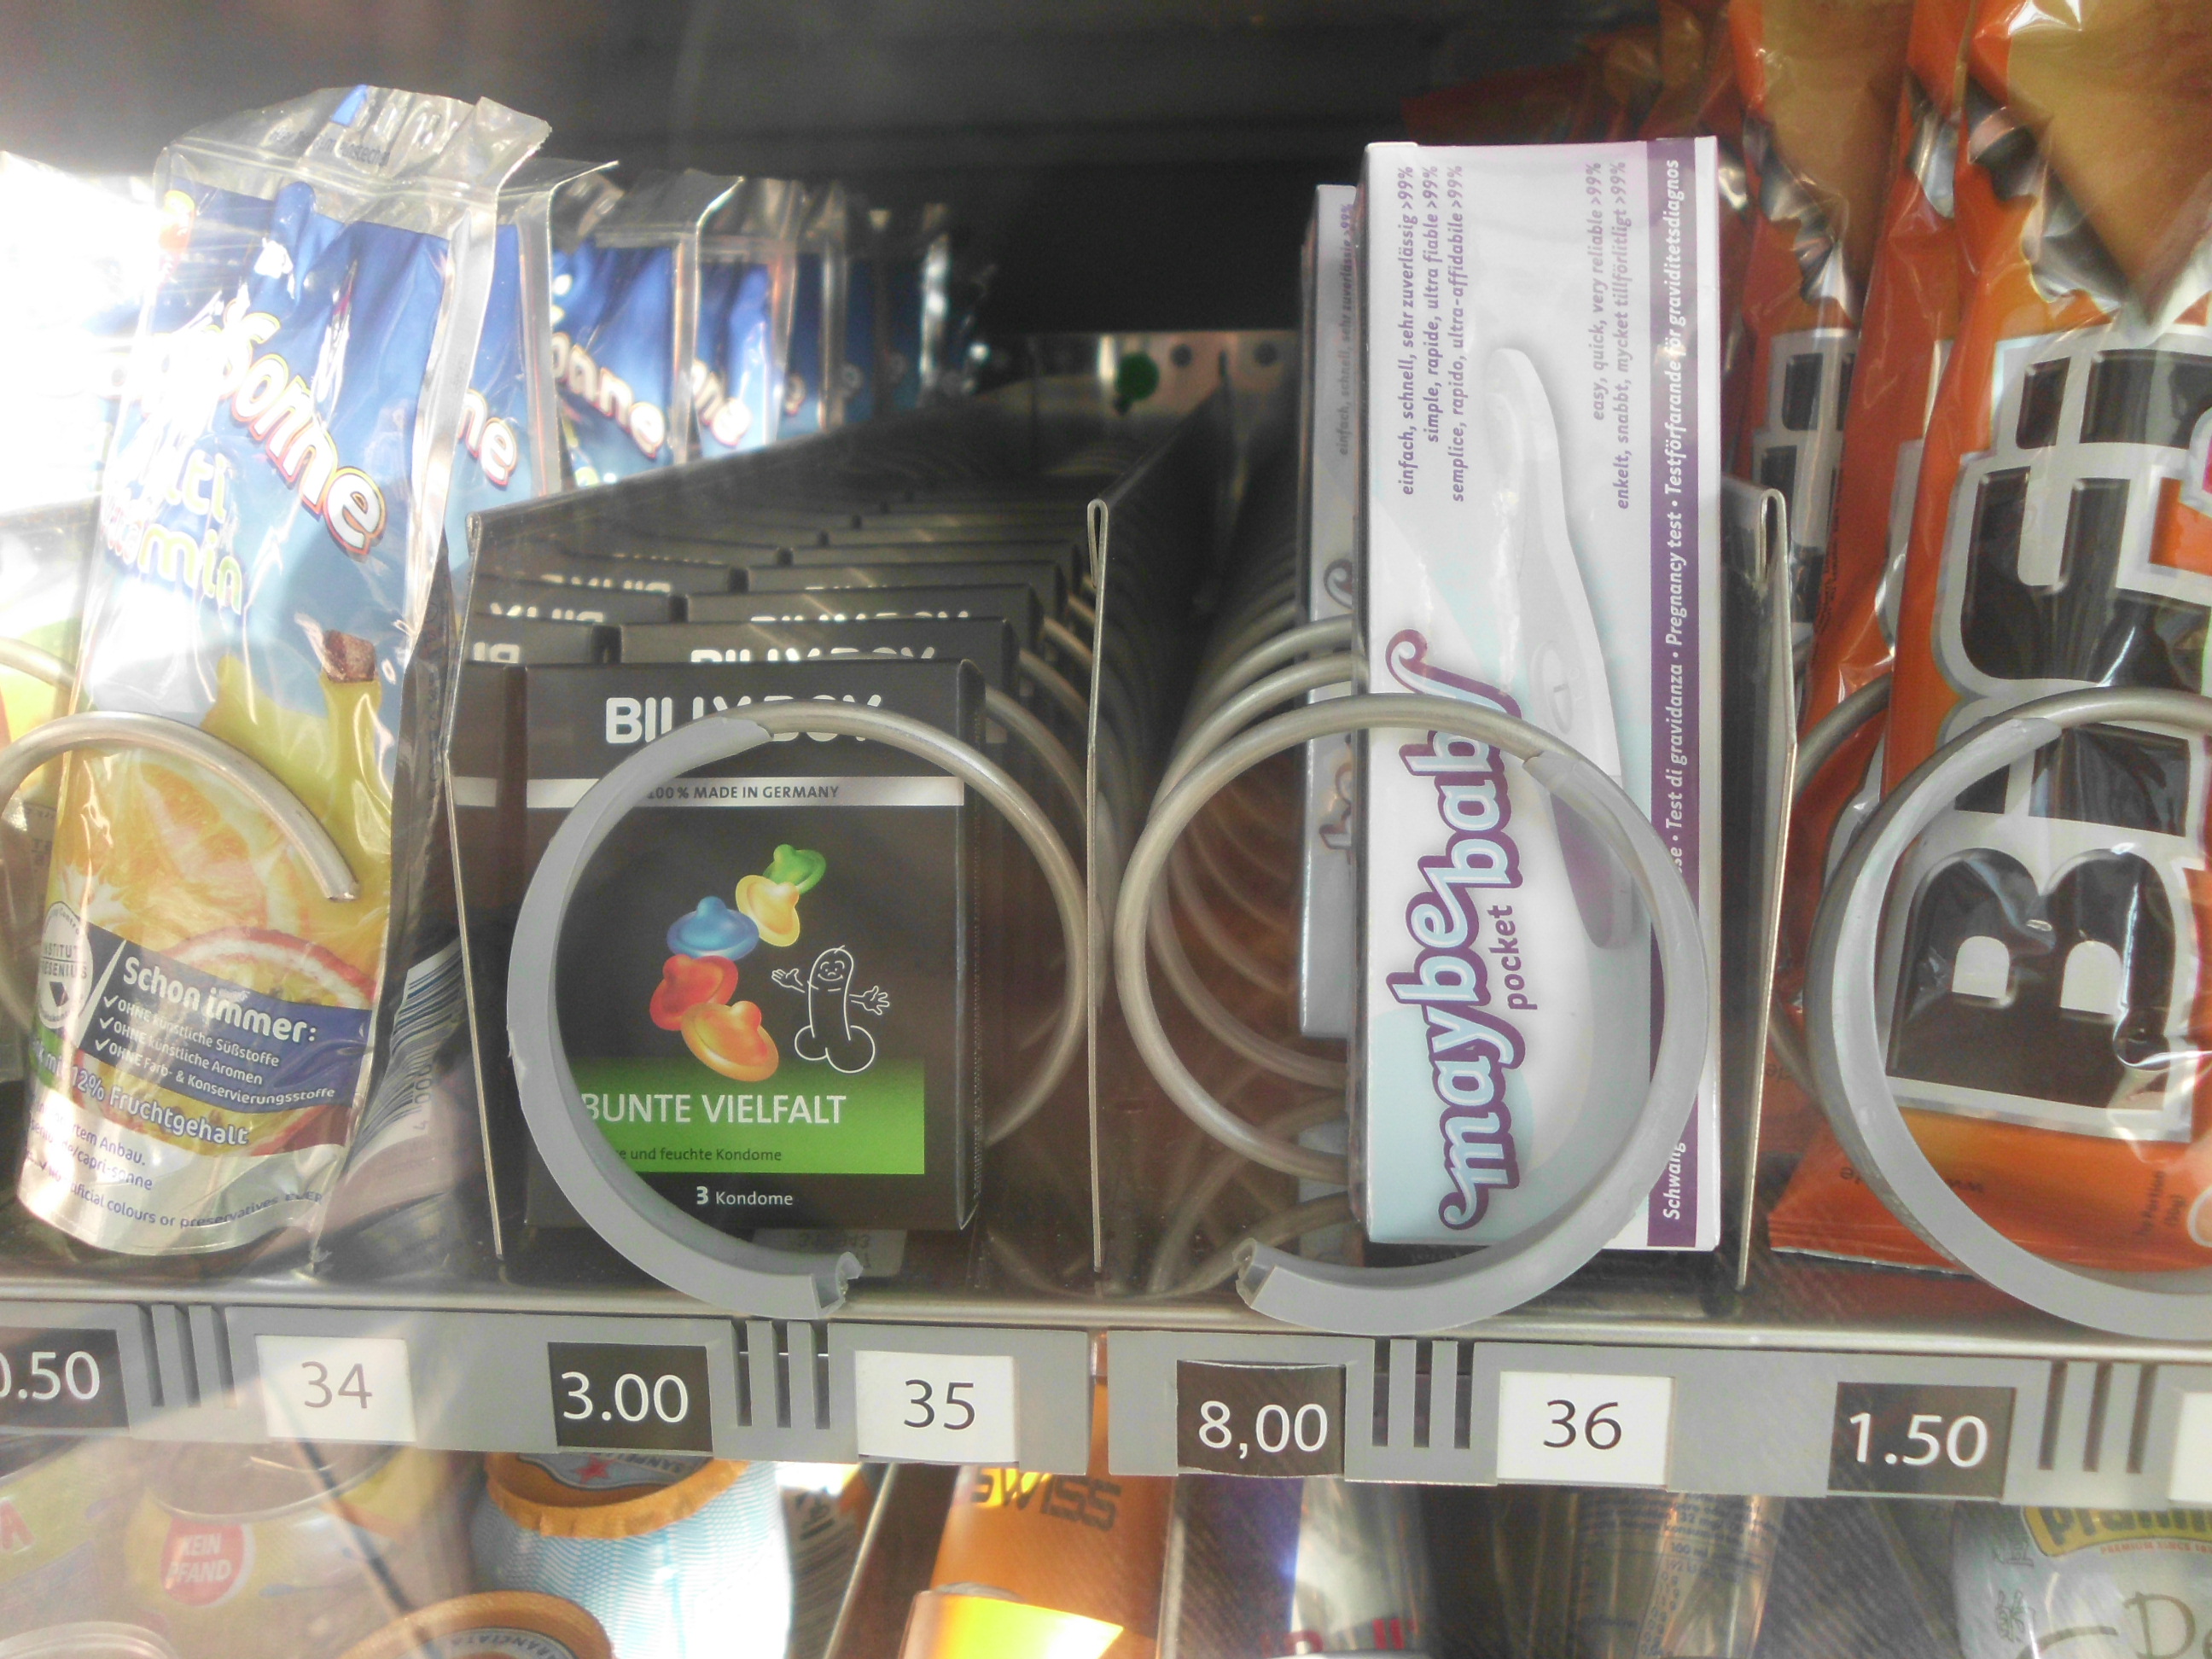 Kondome u. Schwangerschaftstest zwischen Capri-Sonne und BiFi Roll im Snackautomaten am Bhf. Treptower Park. Mit Dank an Thorge, ansonsten h&auml;tte ich nicht so genau hingesehen.